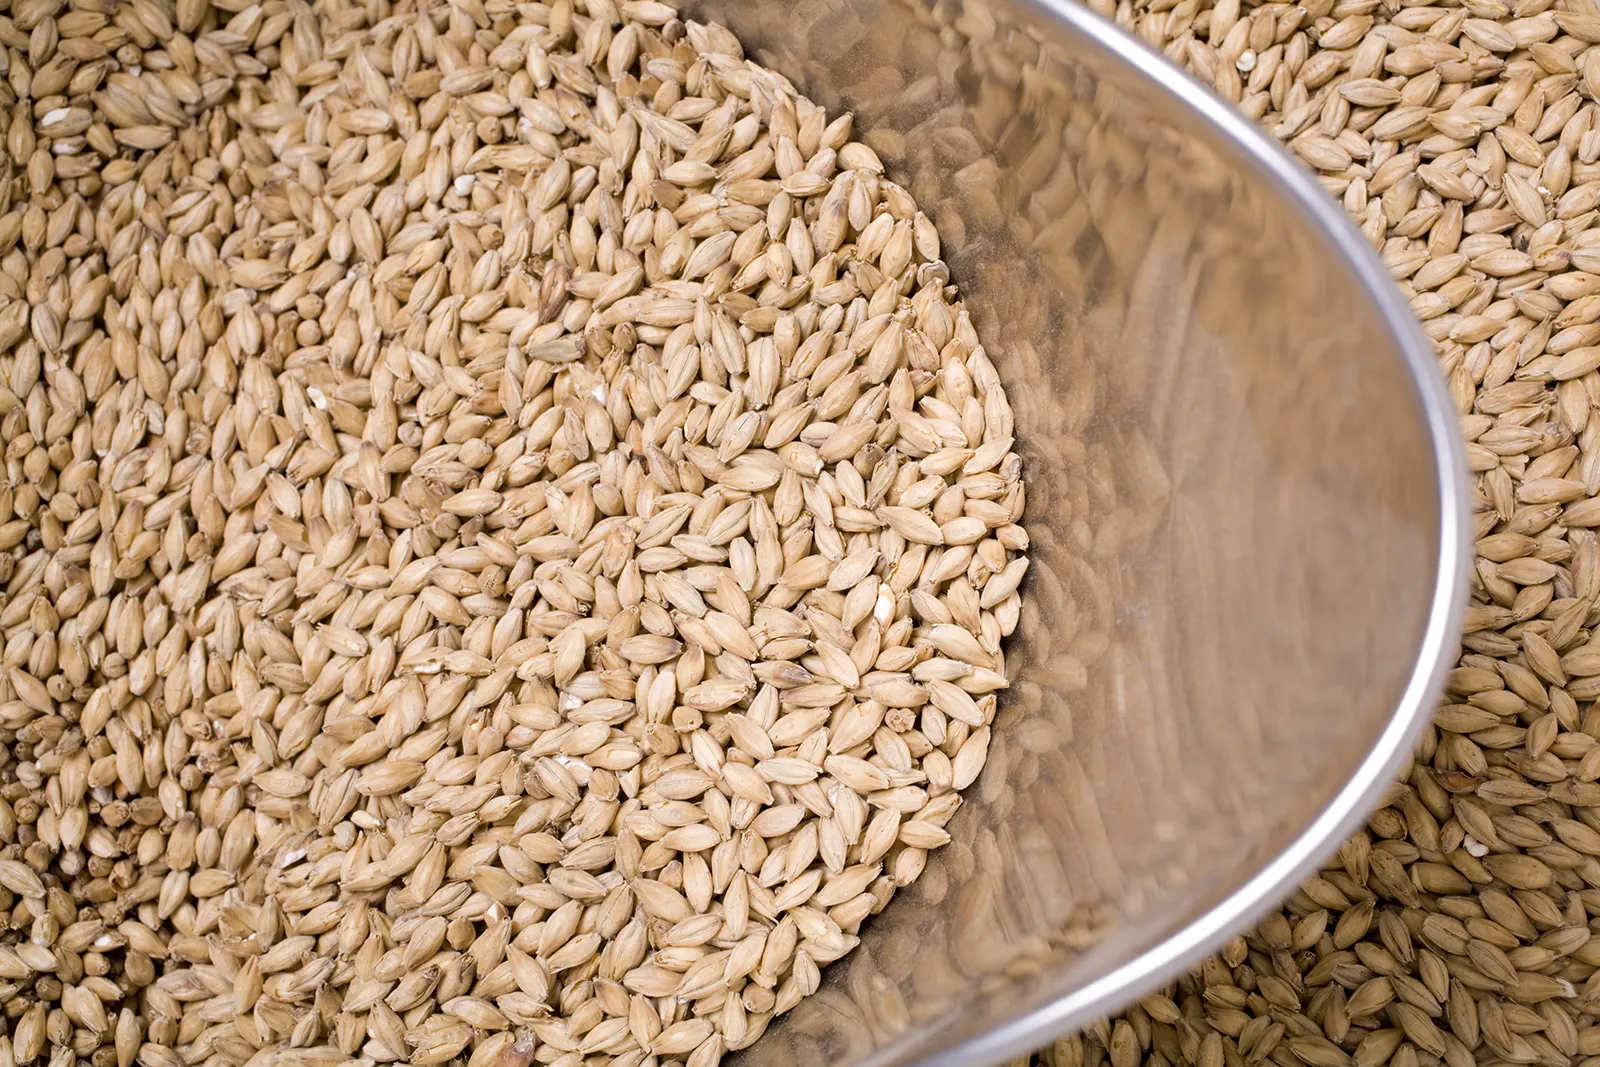 A bowl of malt grains